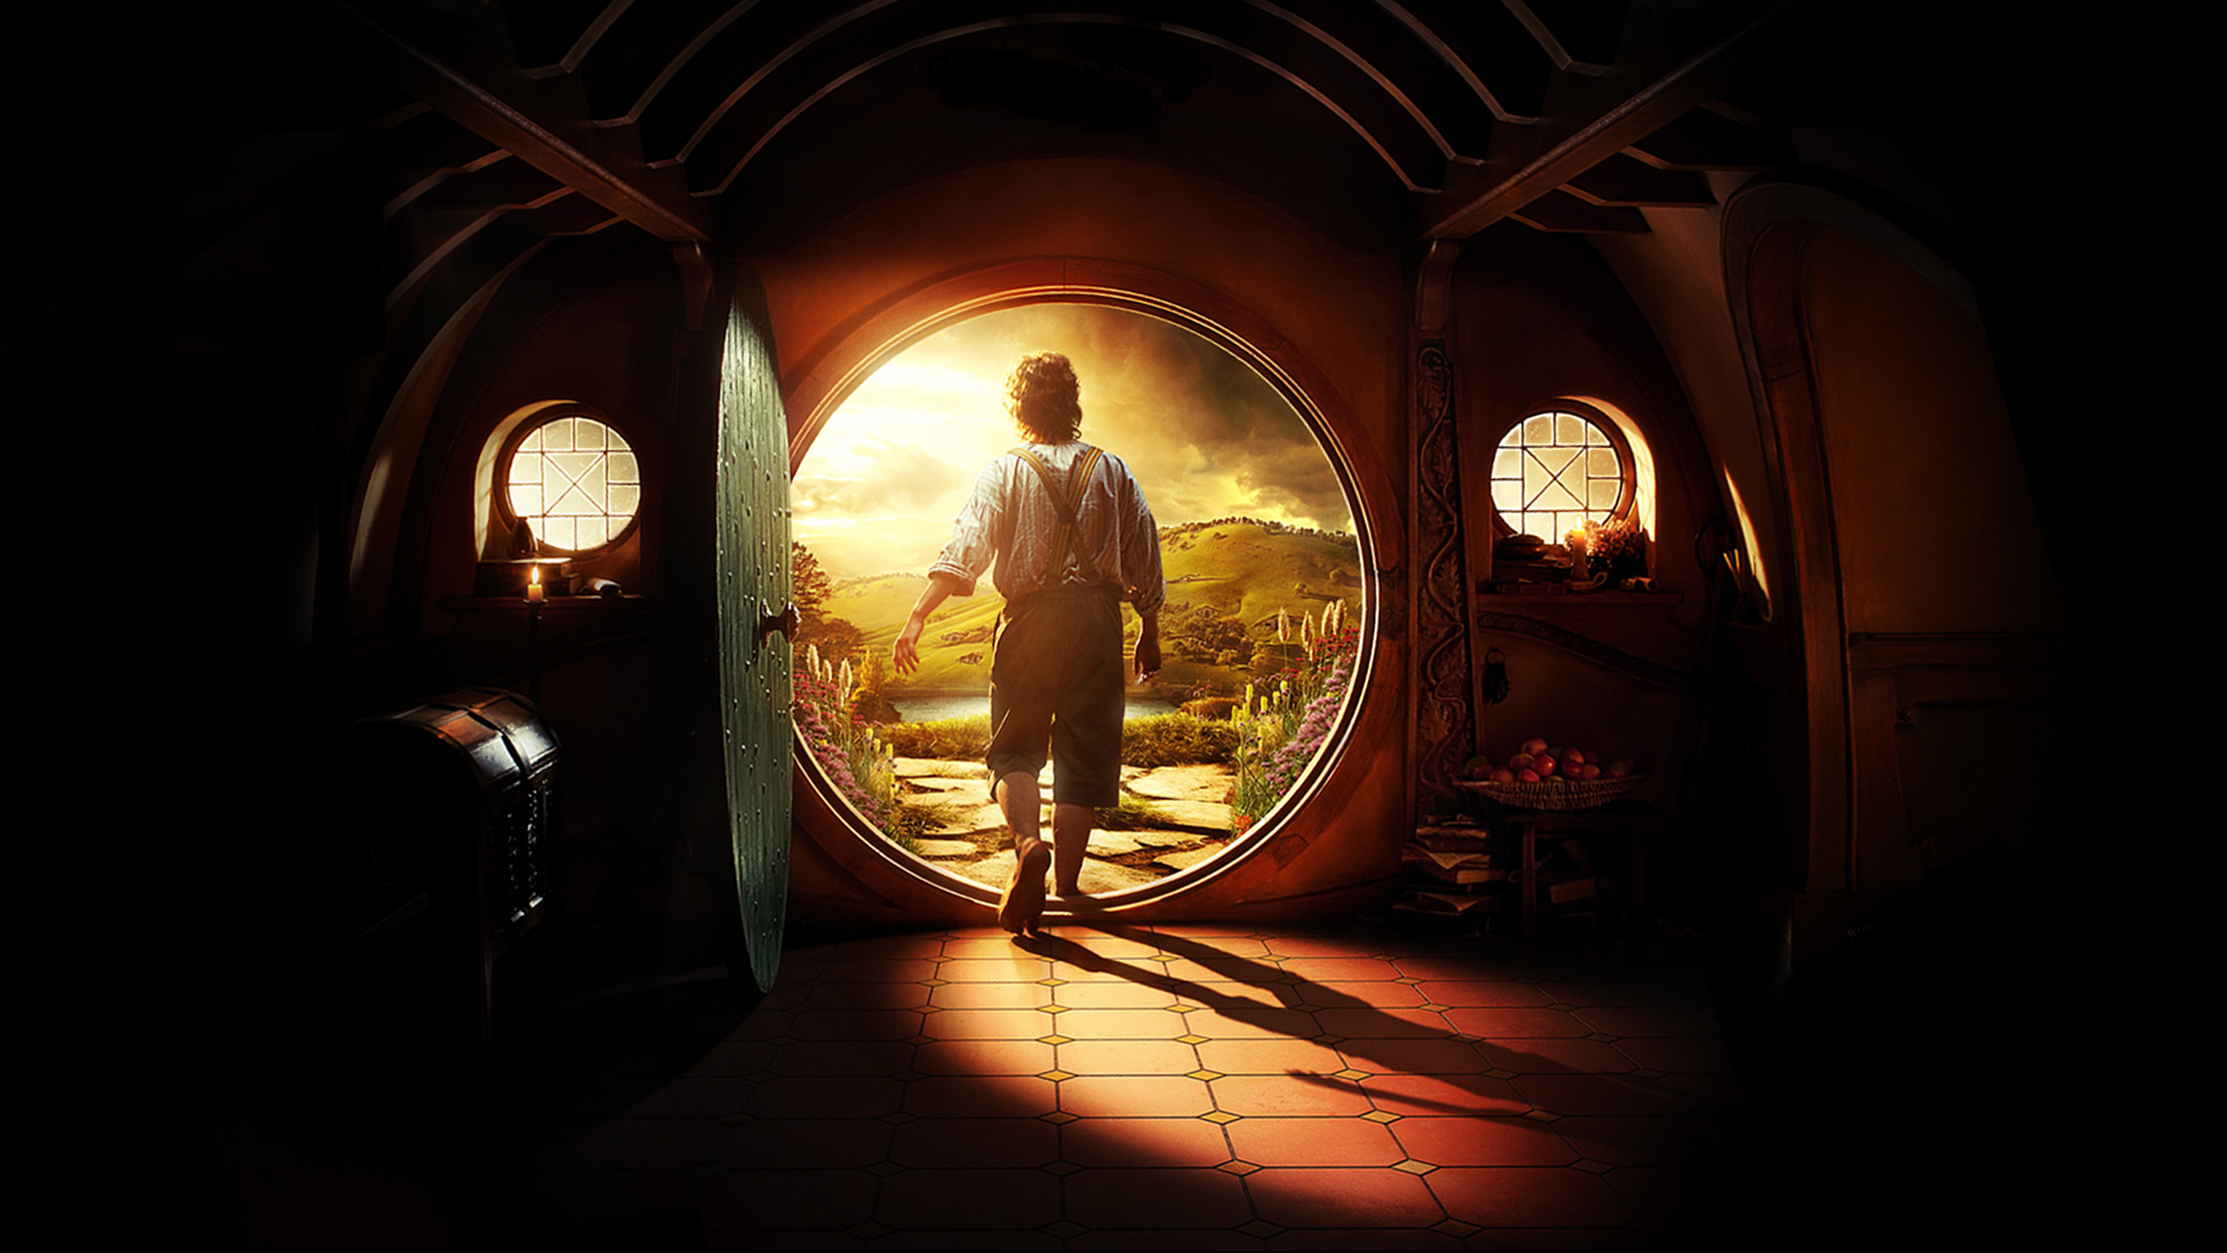 Free The Hobbit HD Wallpapers Download | PixelsTalk.Net